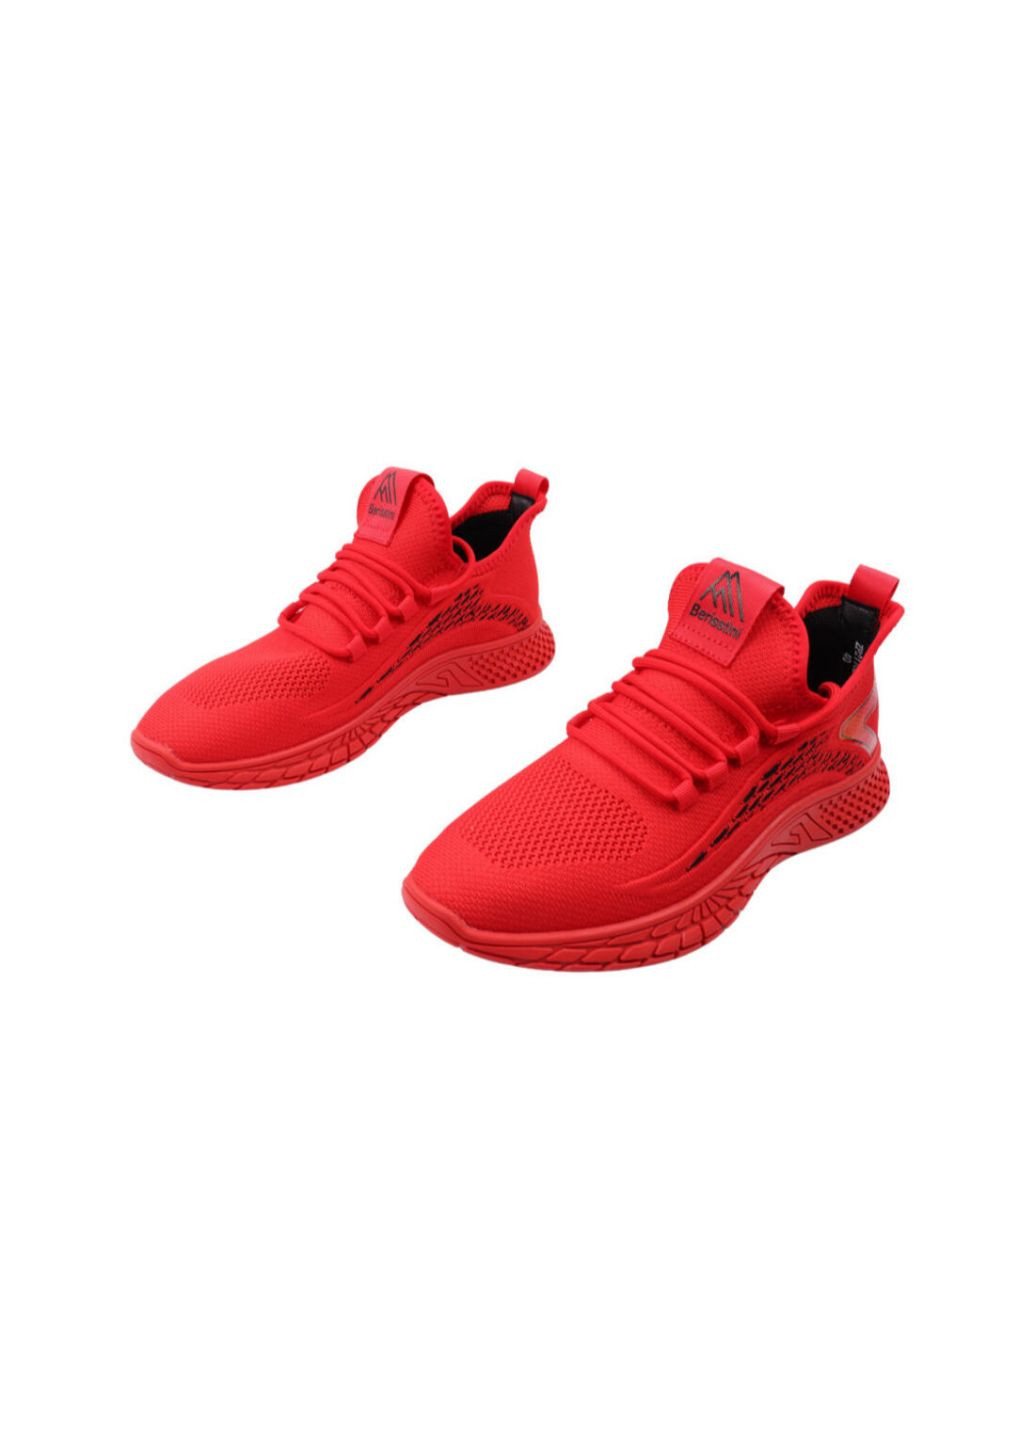 Червоні кросівки чоловічі червоні текстиль Berisstini 71-22LK